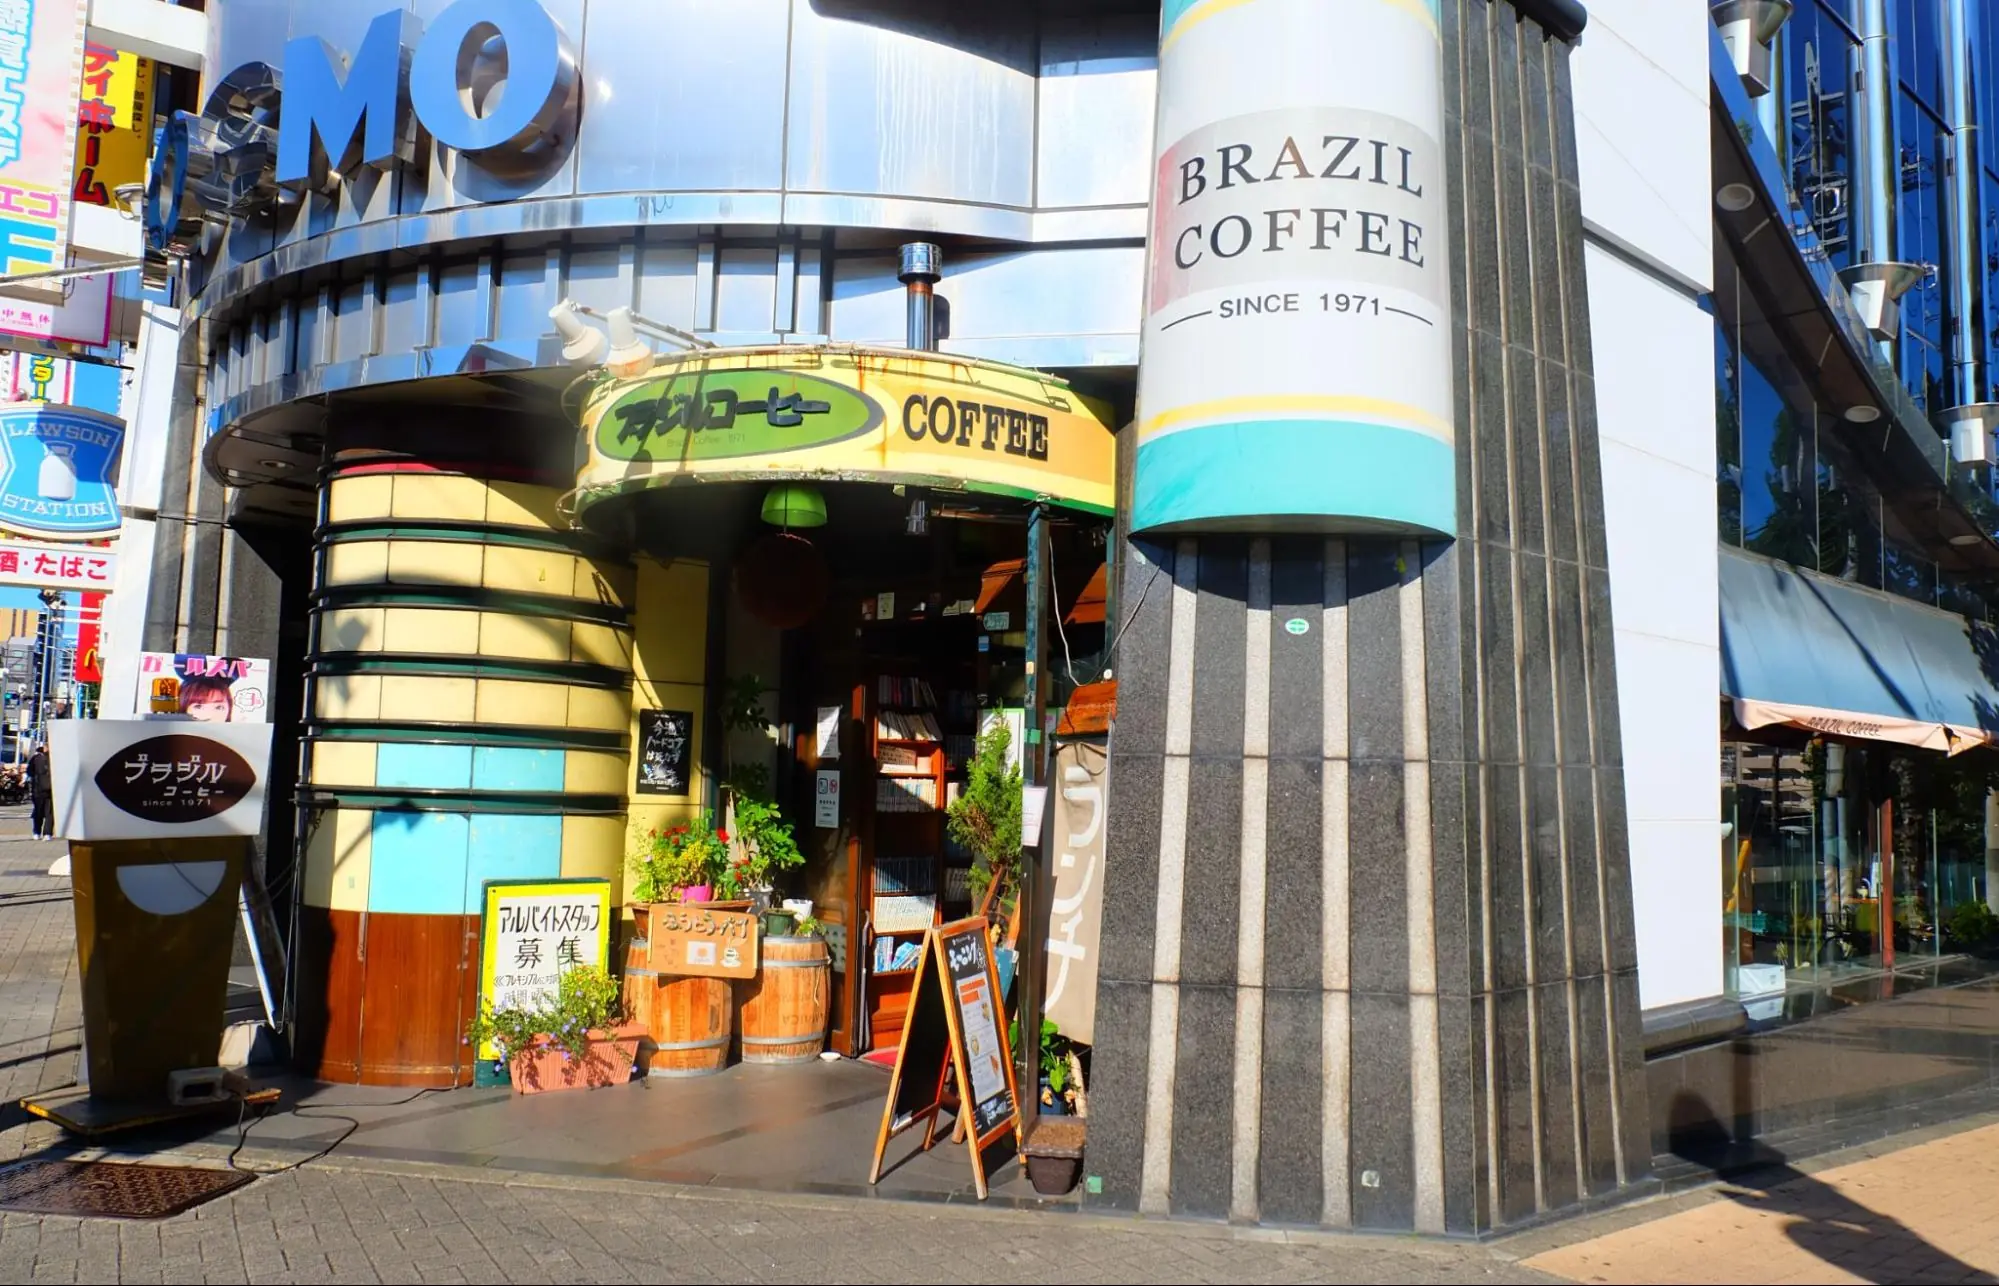 나고야·카나야마의 땅에서 사랑받고 있는 노포 커피숍「브라질 커피」